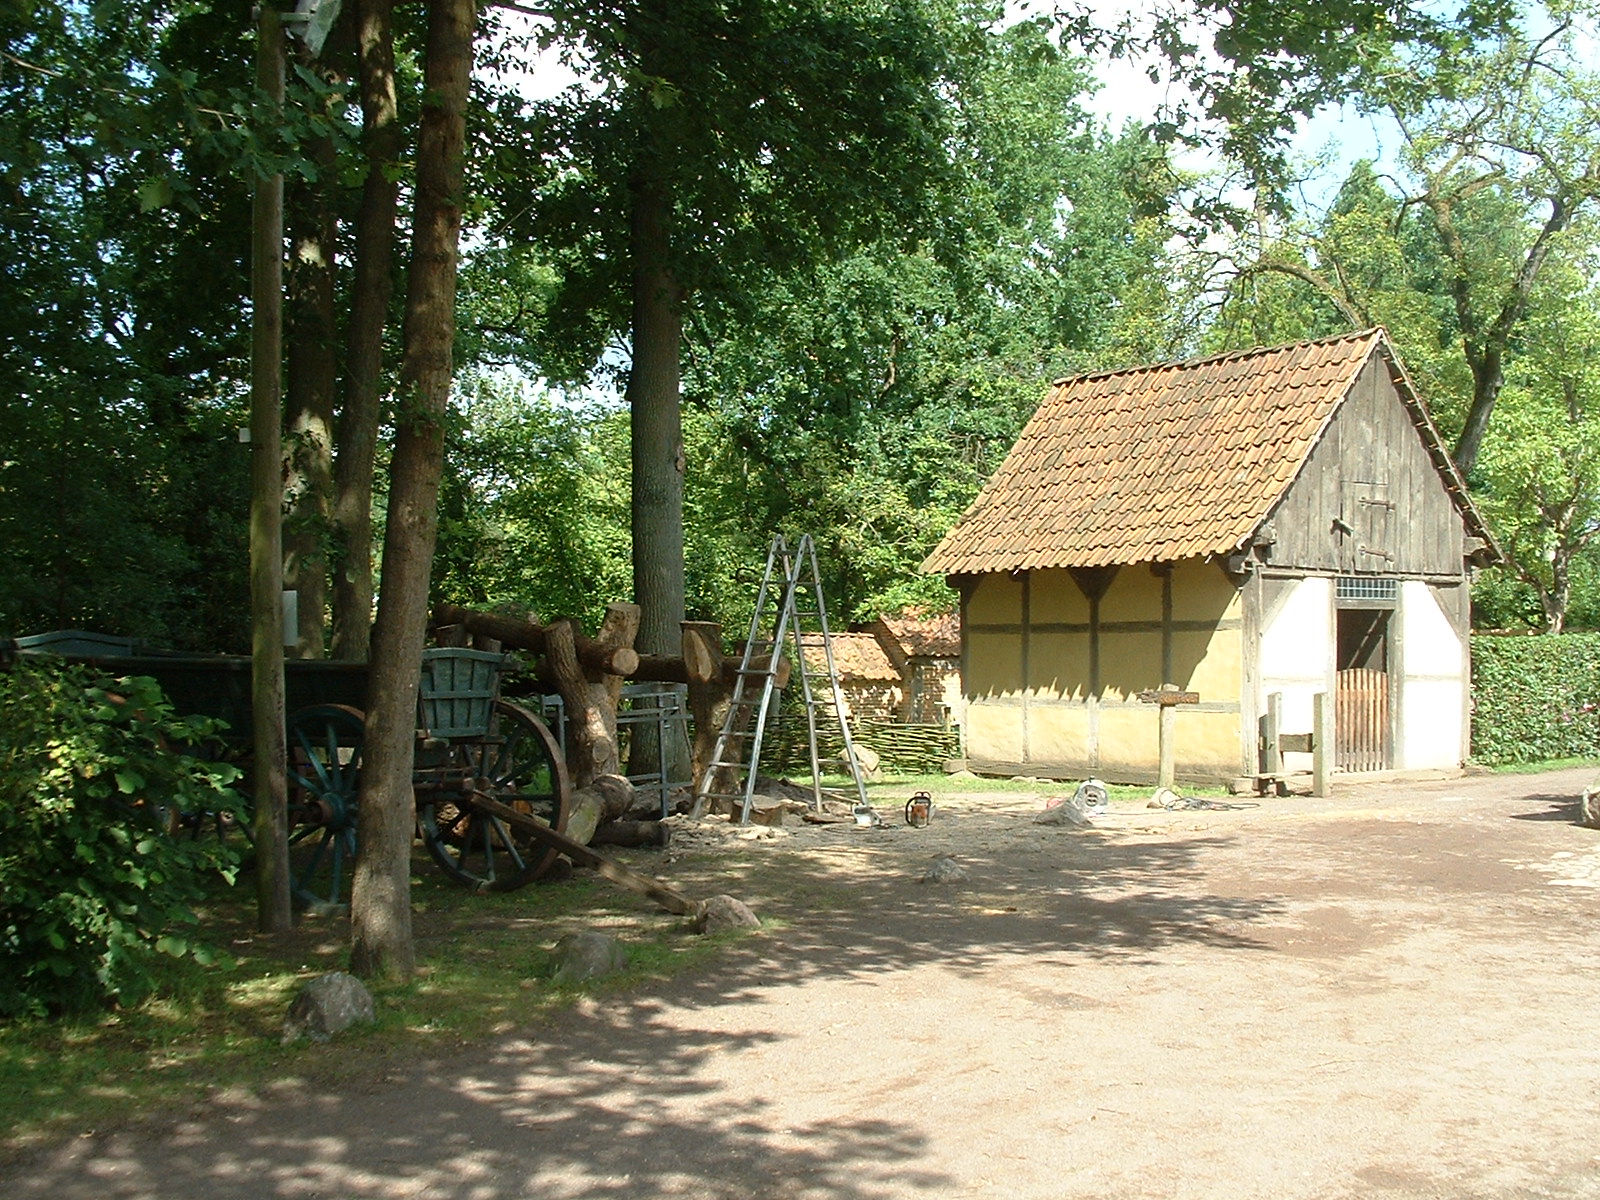 Museum Ammerländer Bauernhaus in Bad Zwischenahn